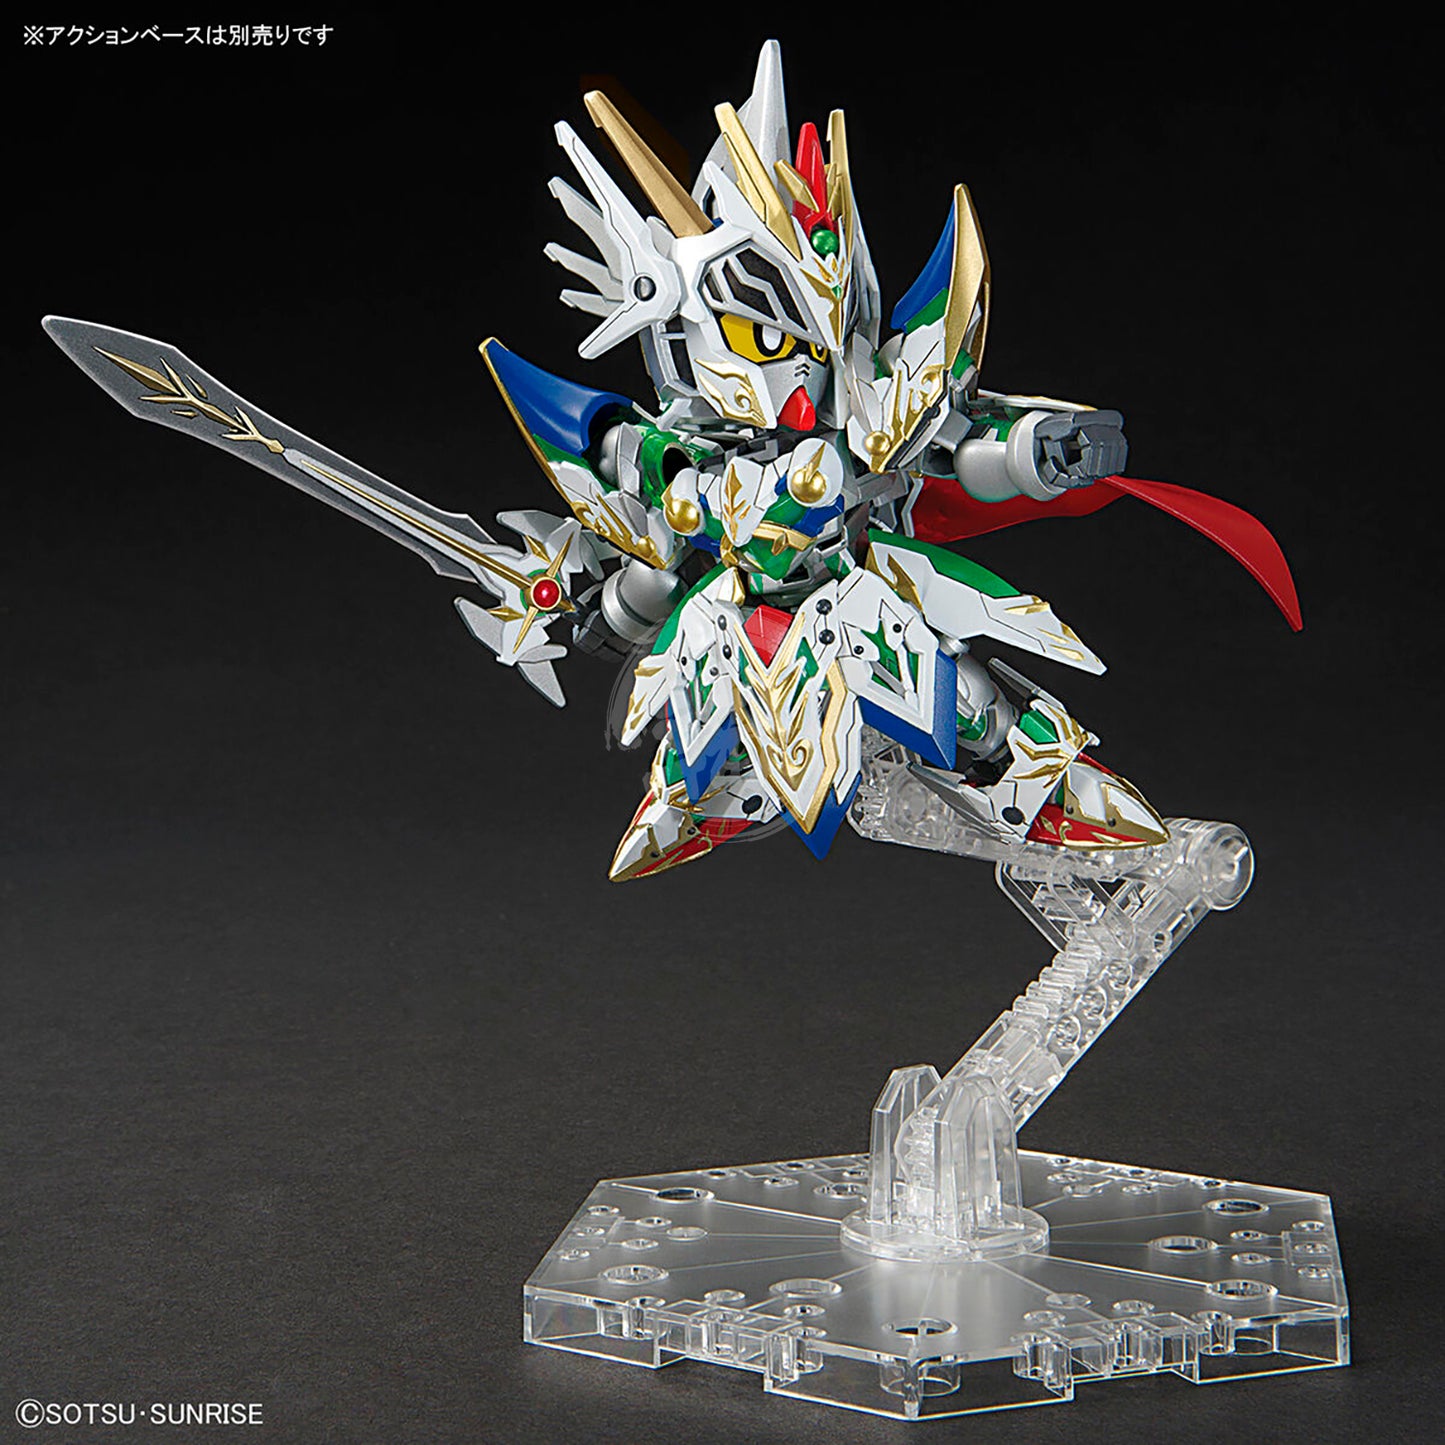 SDW Heroes Knight Strike Gundam - ShokuninGunpla